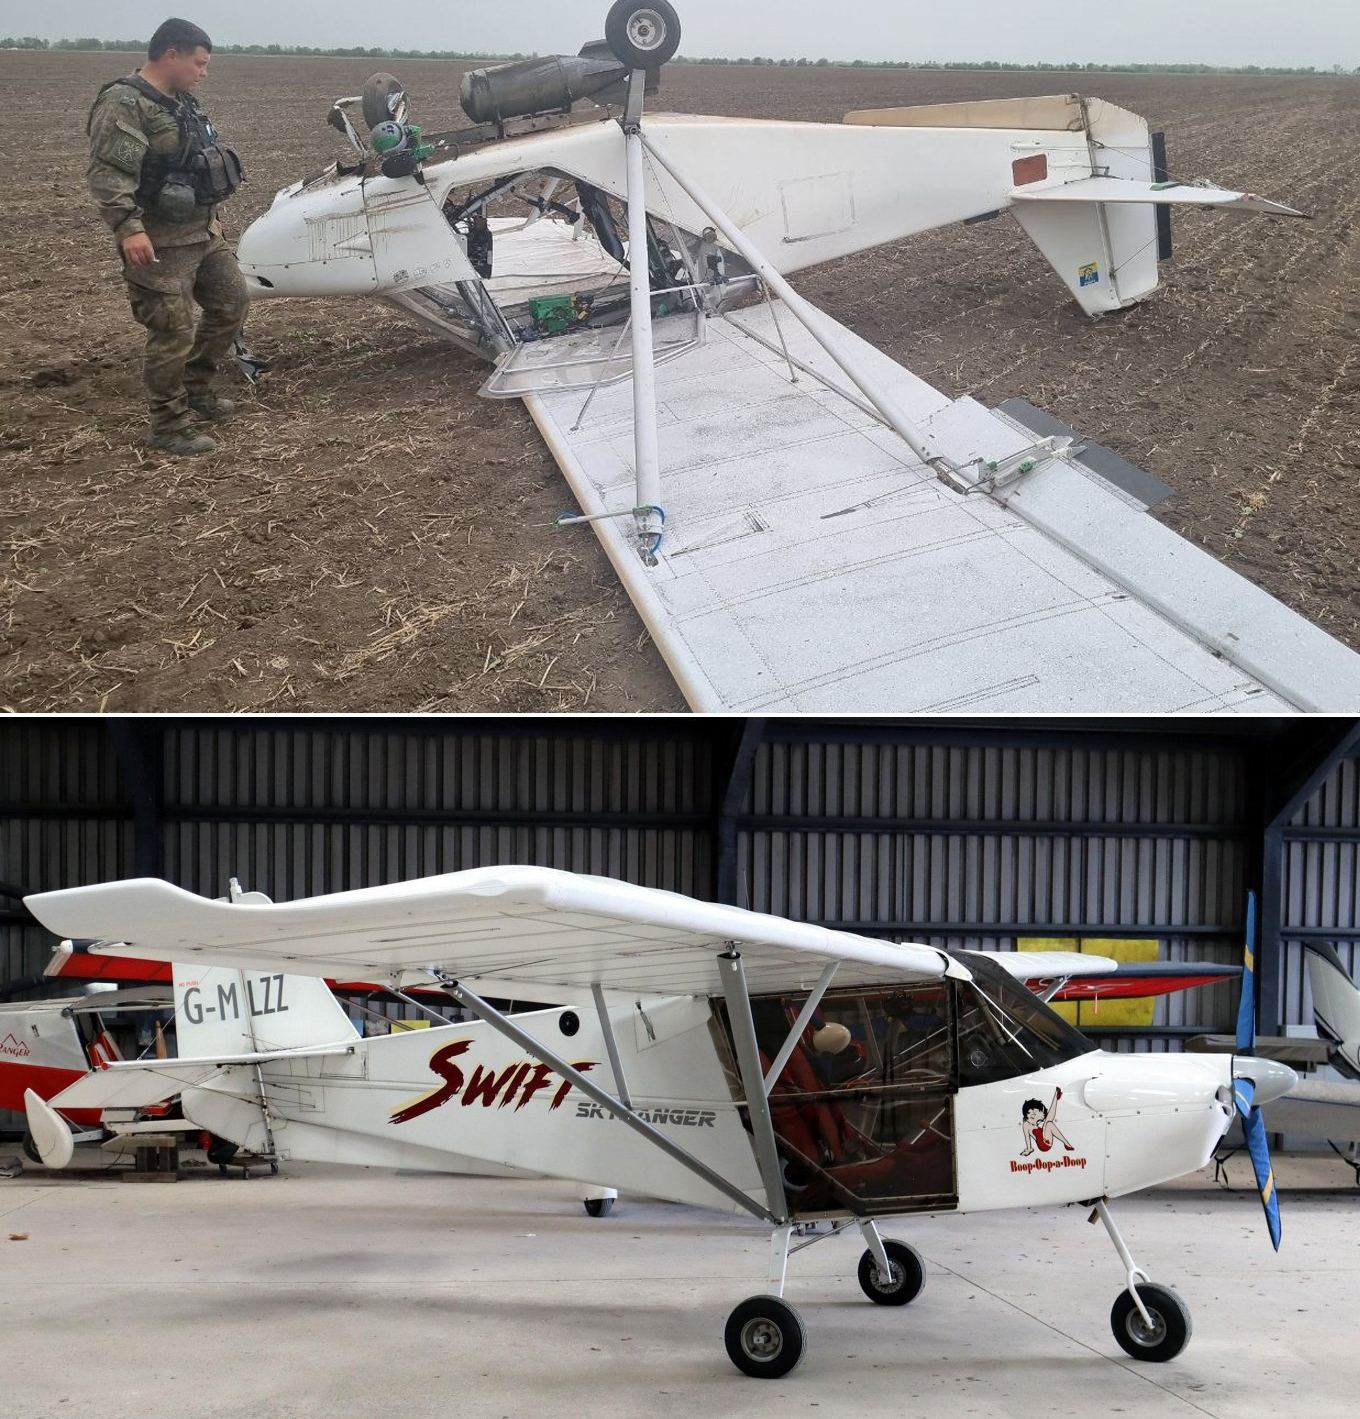 Skyranger Swift / Defense Express / Gặp gỡ Ninja: Tiết lộ tên của máy bay không người lái có tầm bay xa nhất 1.500 km của Ukraine